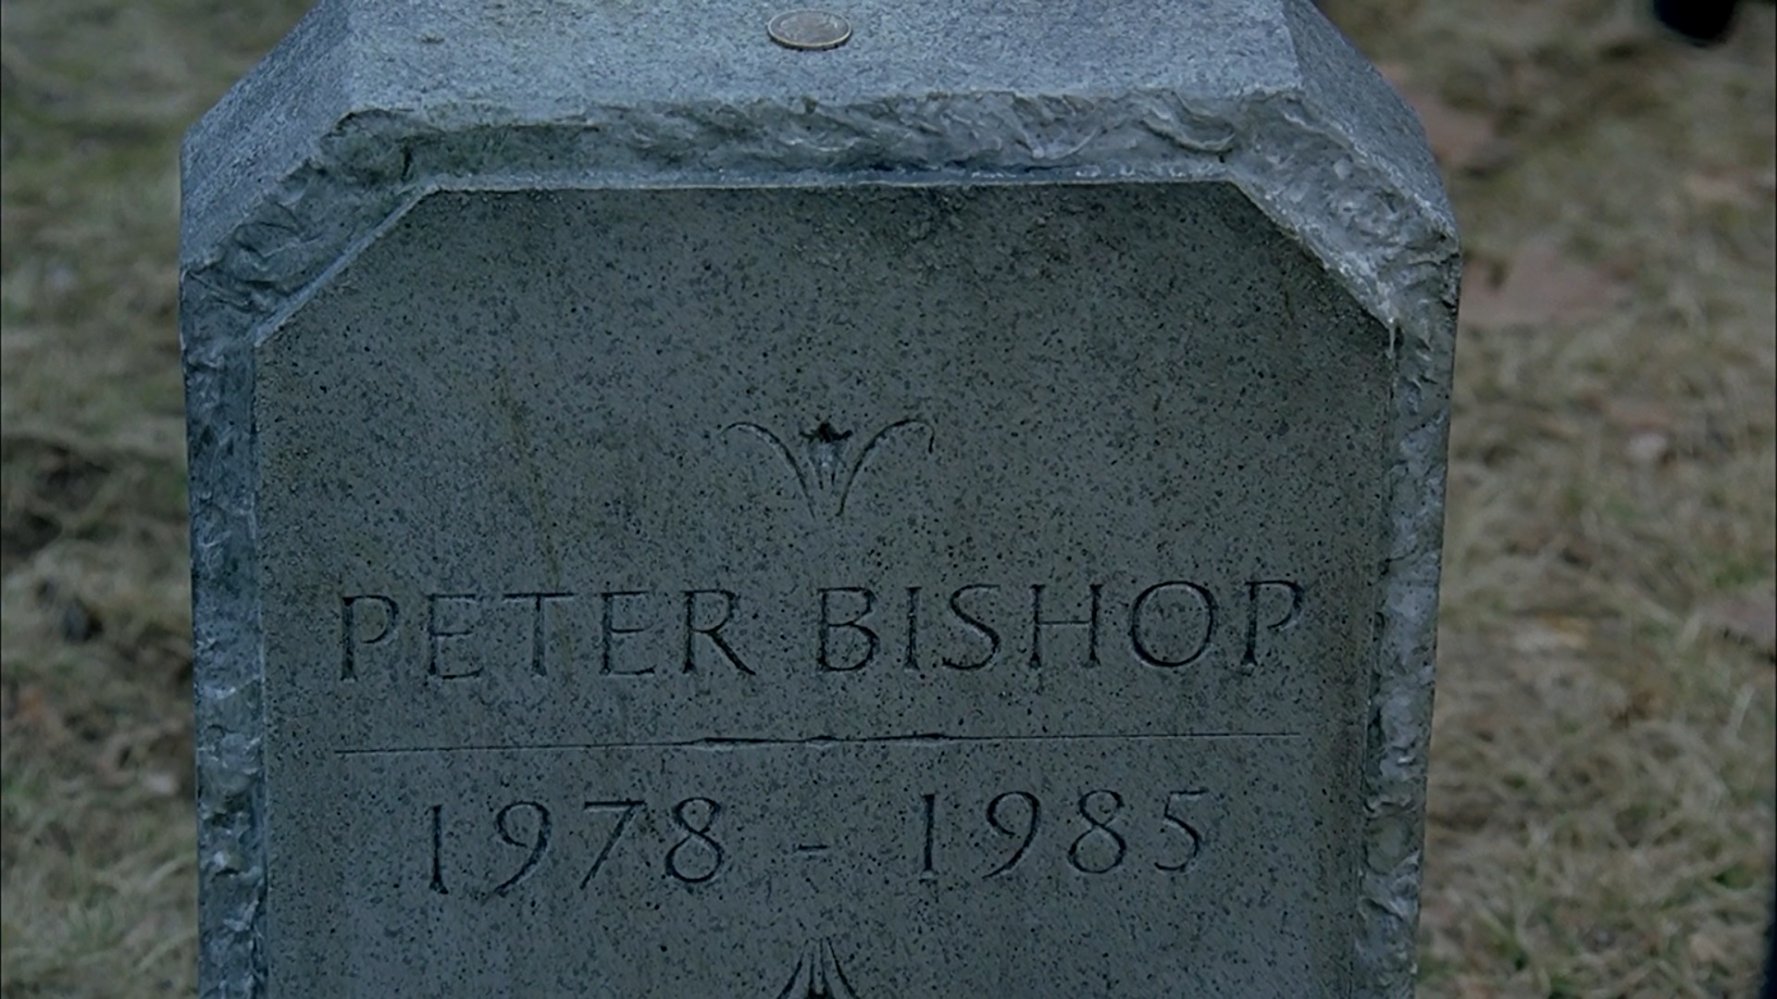 Peter Bishop